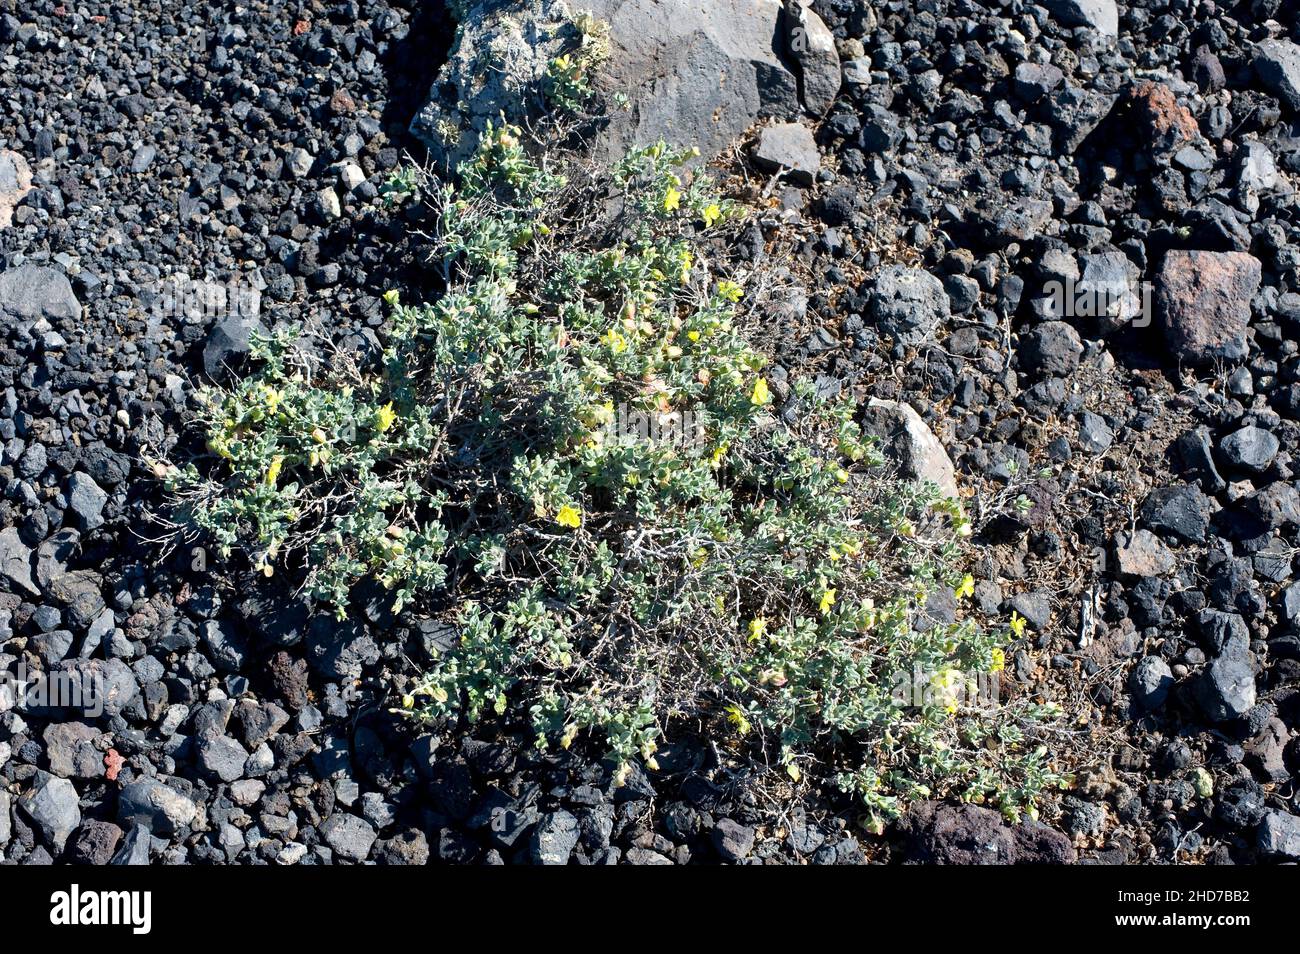 Turmero ou jarilla turmera (Helianthemum canariense) est un arbuste prostrate originaire des îles Canaries et du nord-ouest de l'Afrique.Cette photo a été prise dans Banque D'Images